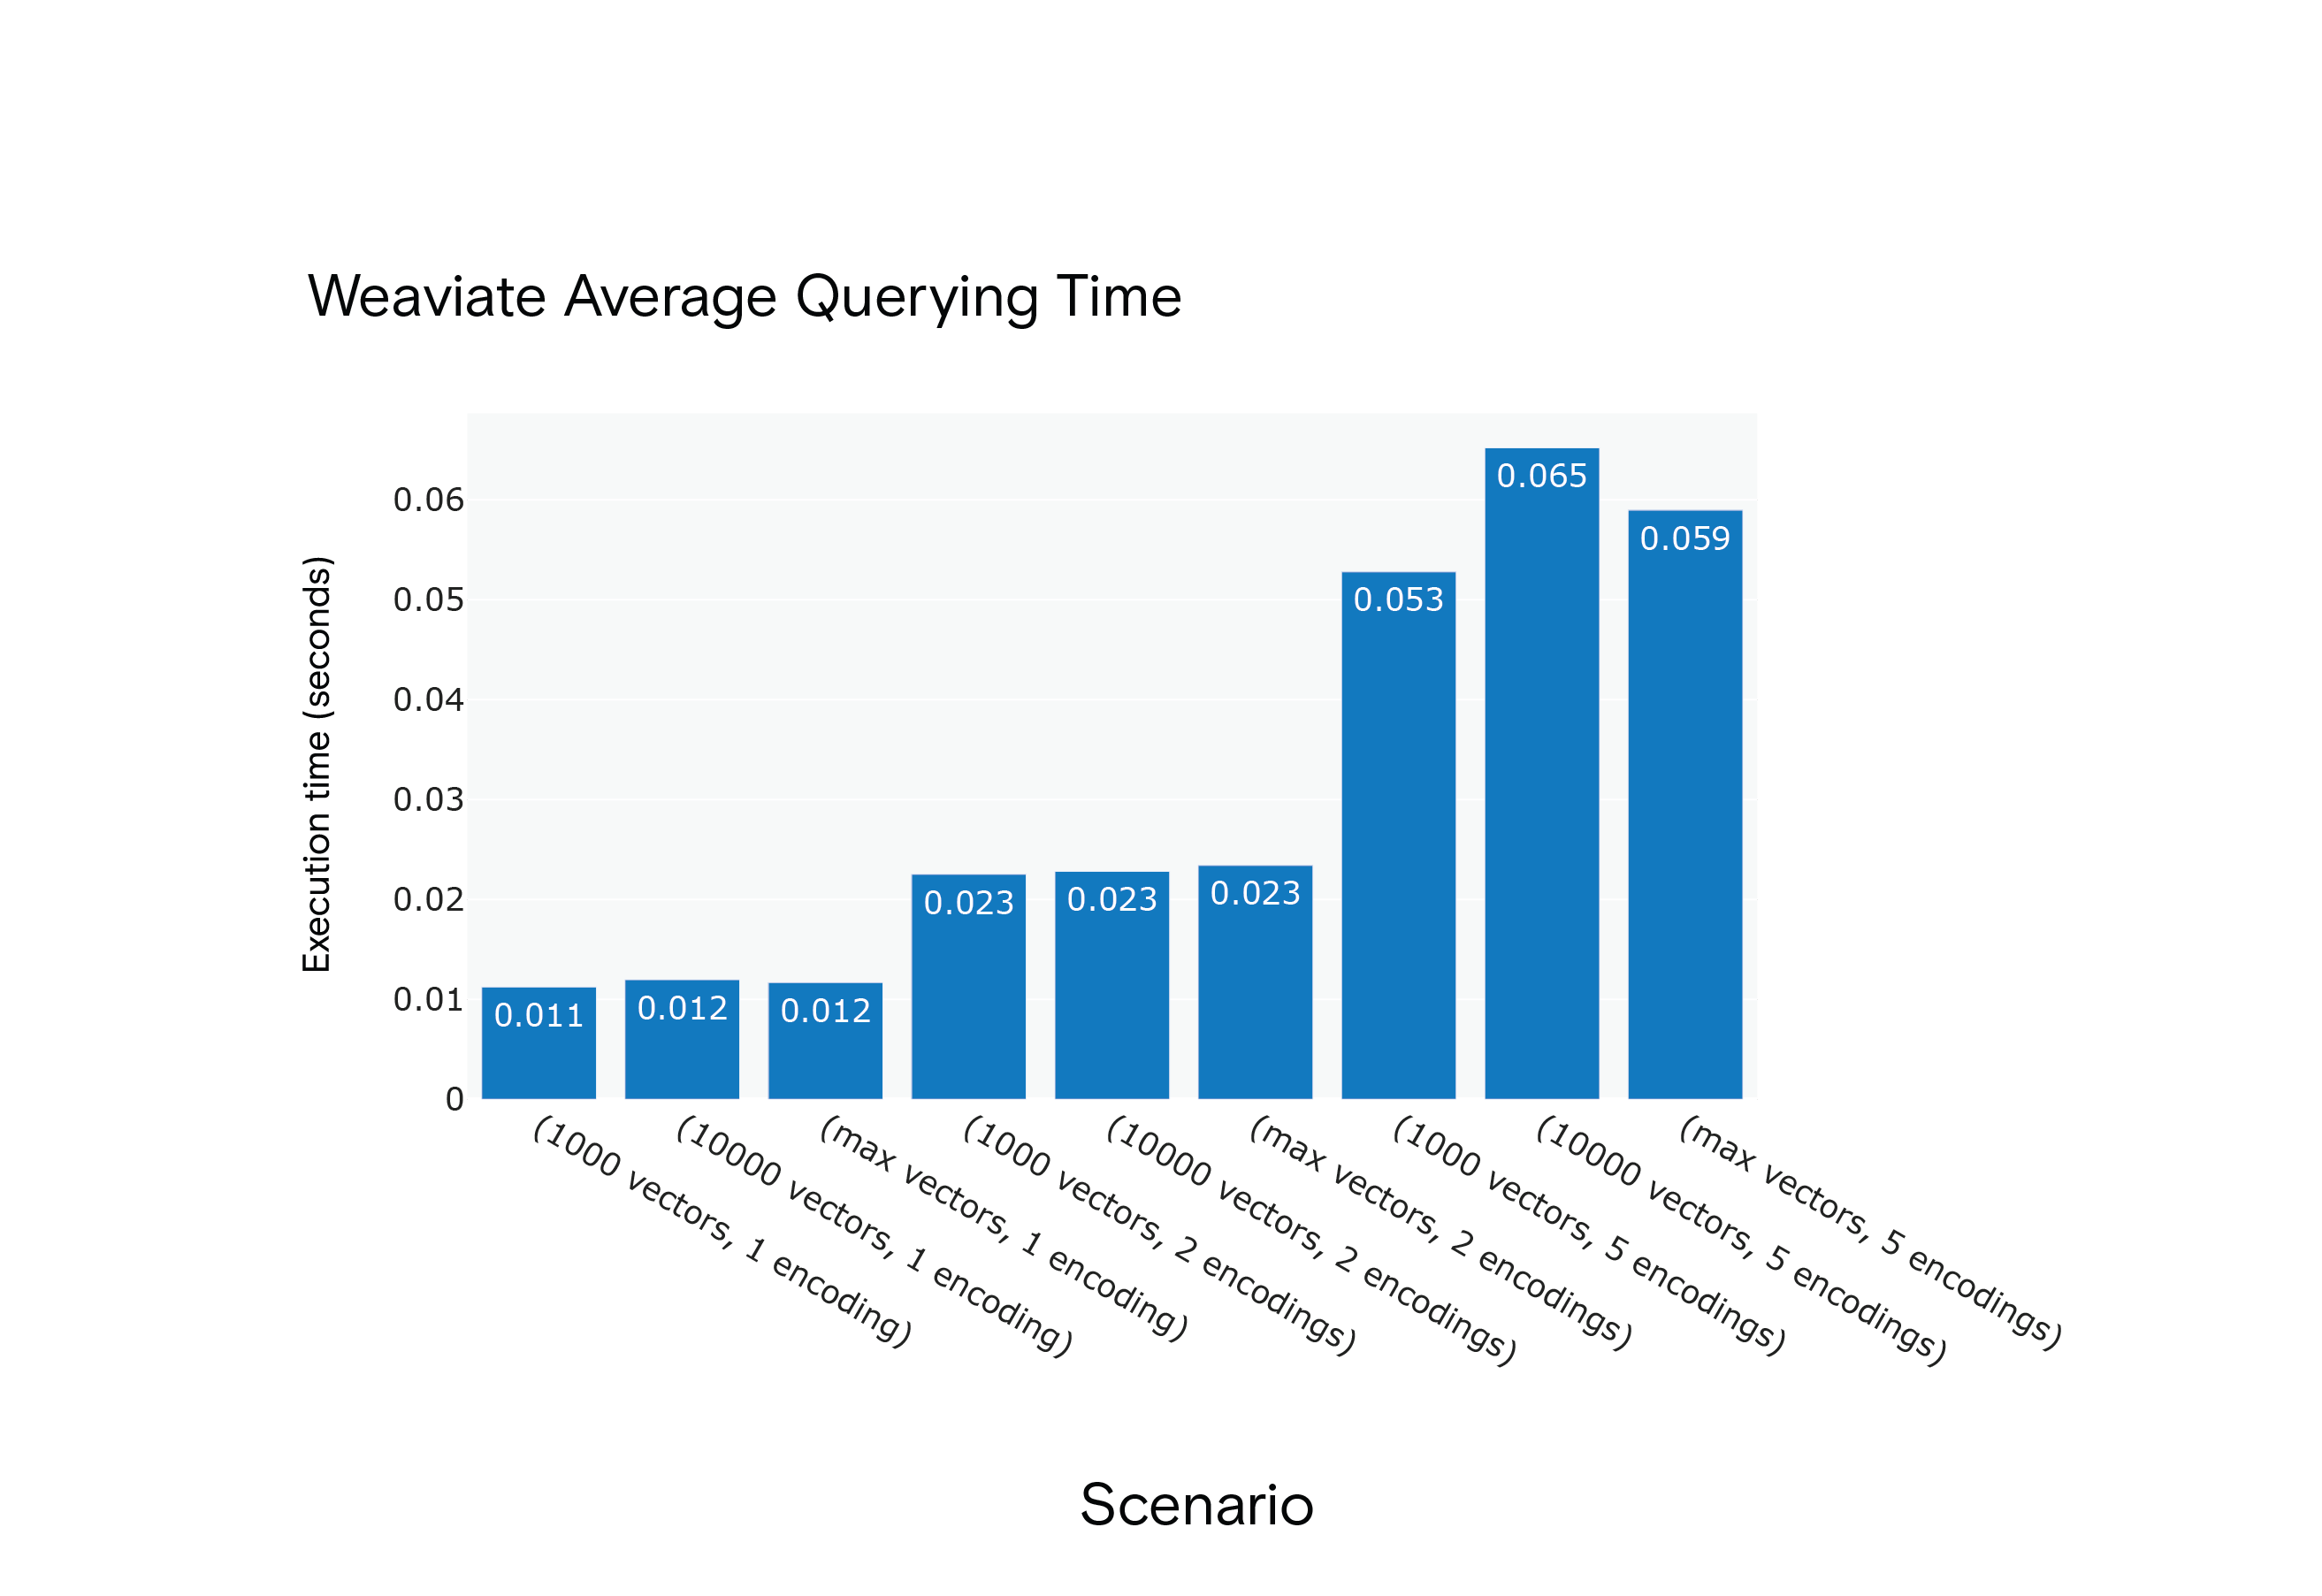 场景 S1 至 S9 下 Weaviate 向量查询所需的平均时间